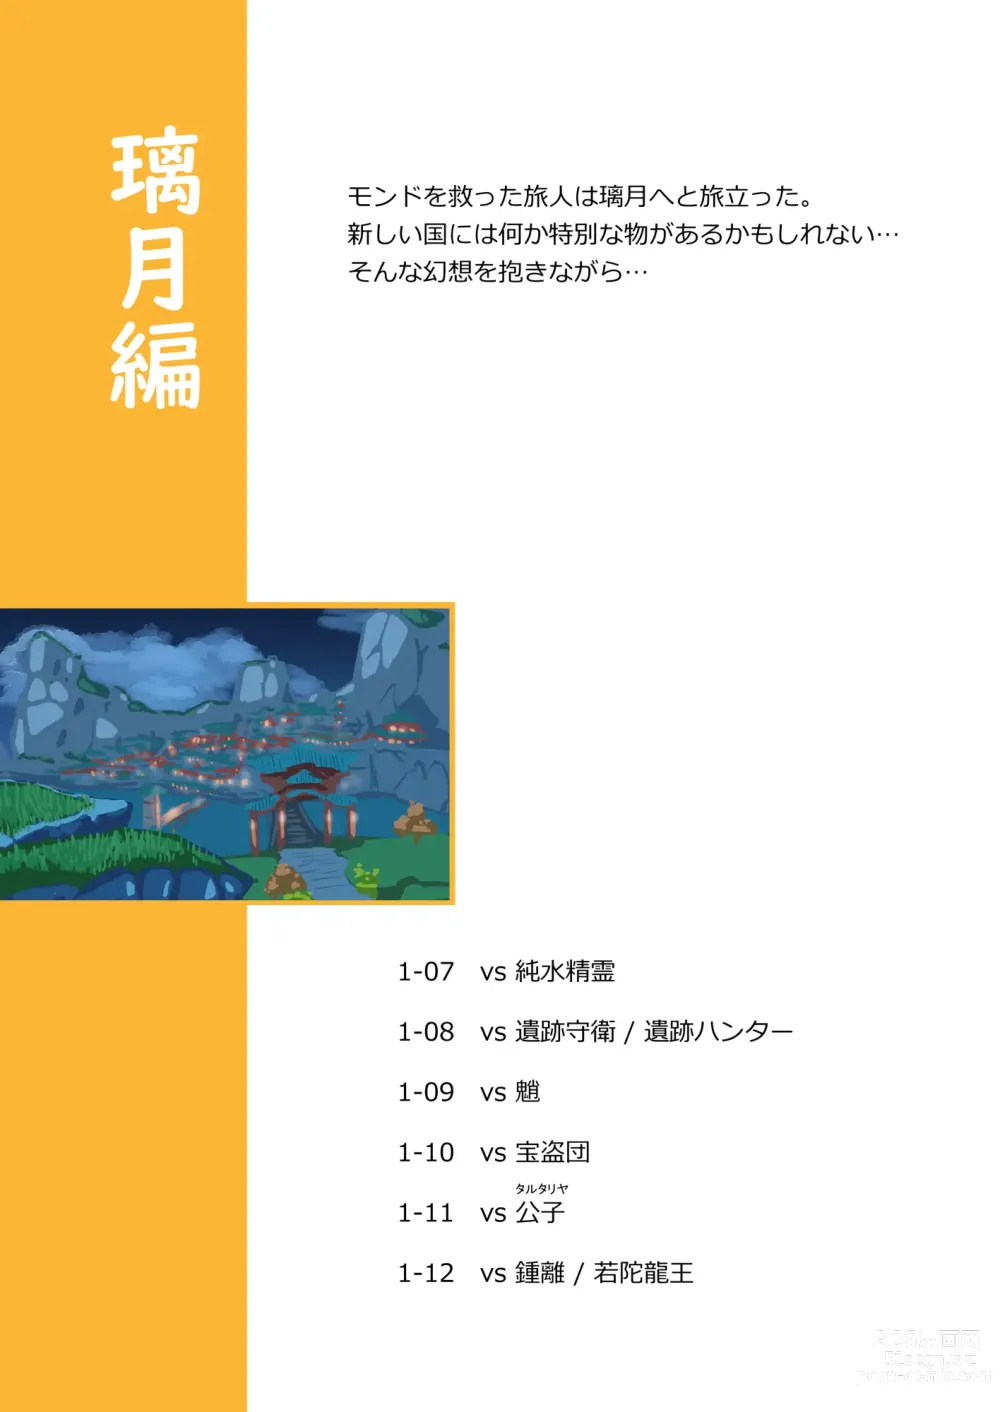 Page 25 of doujinshi Tabibito Haibokuki Ver0.0+Ver1.0